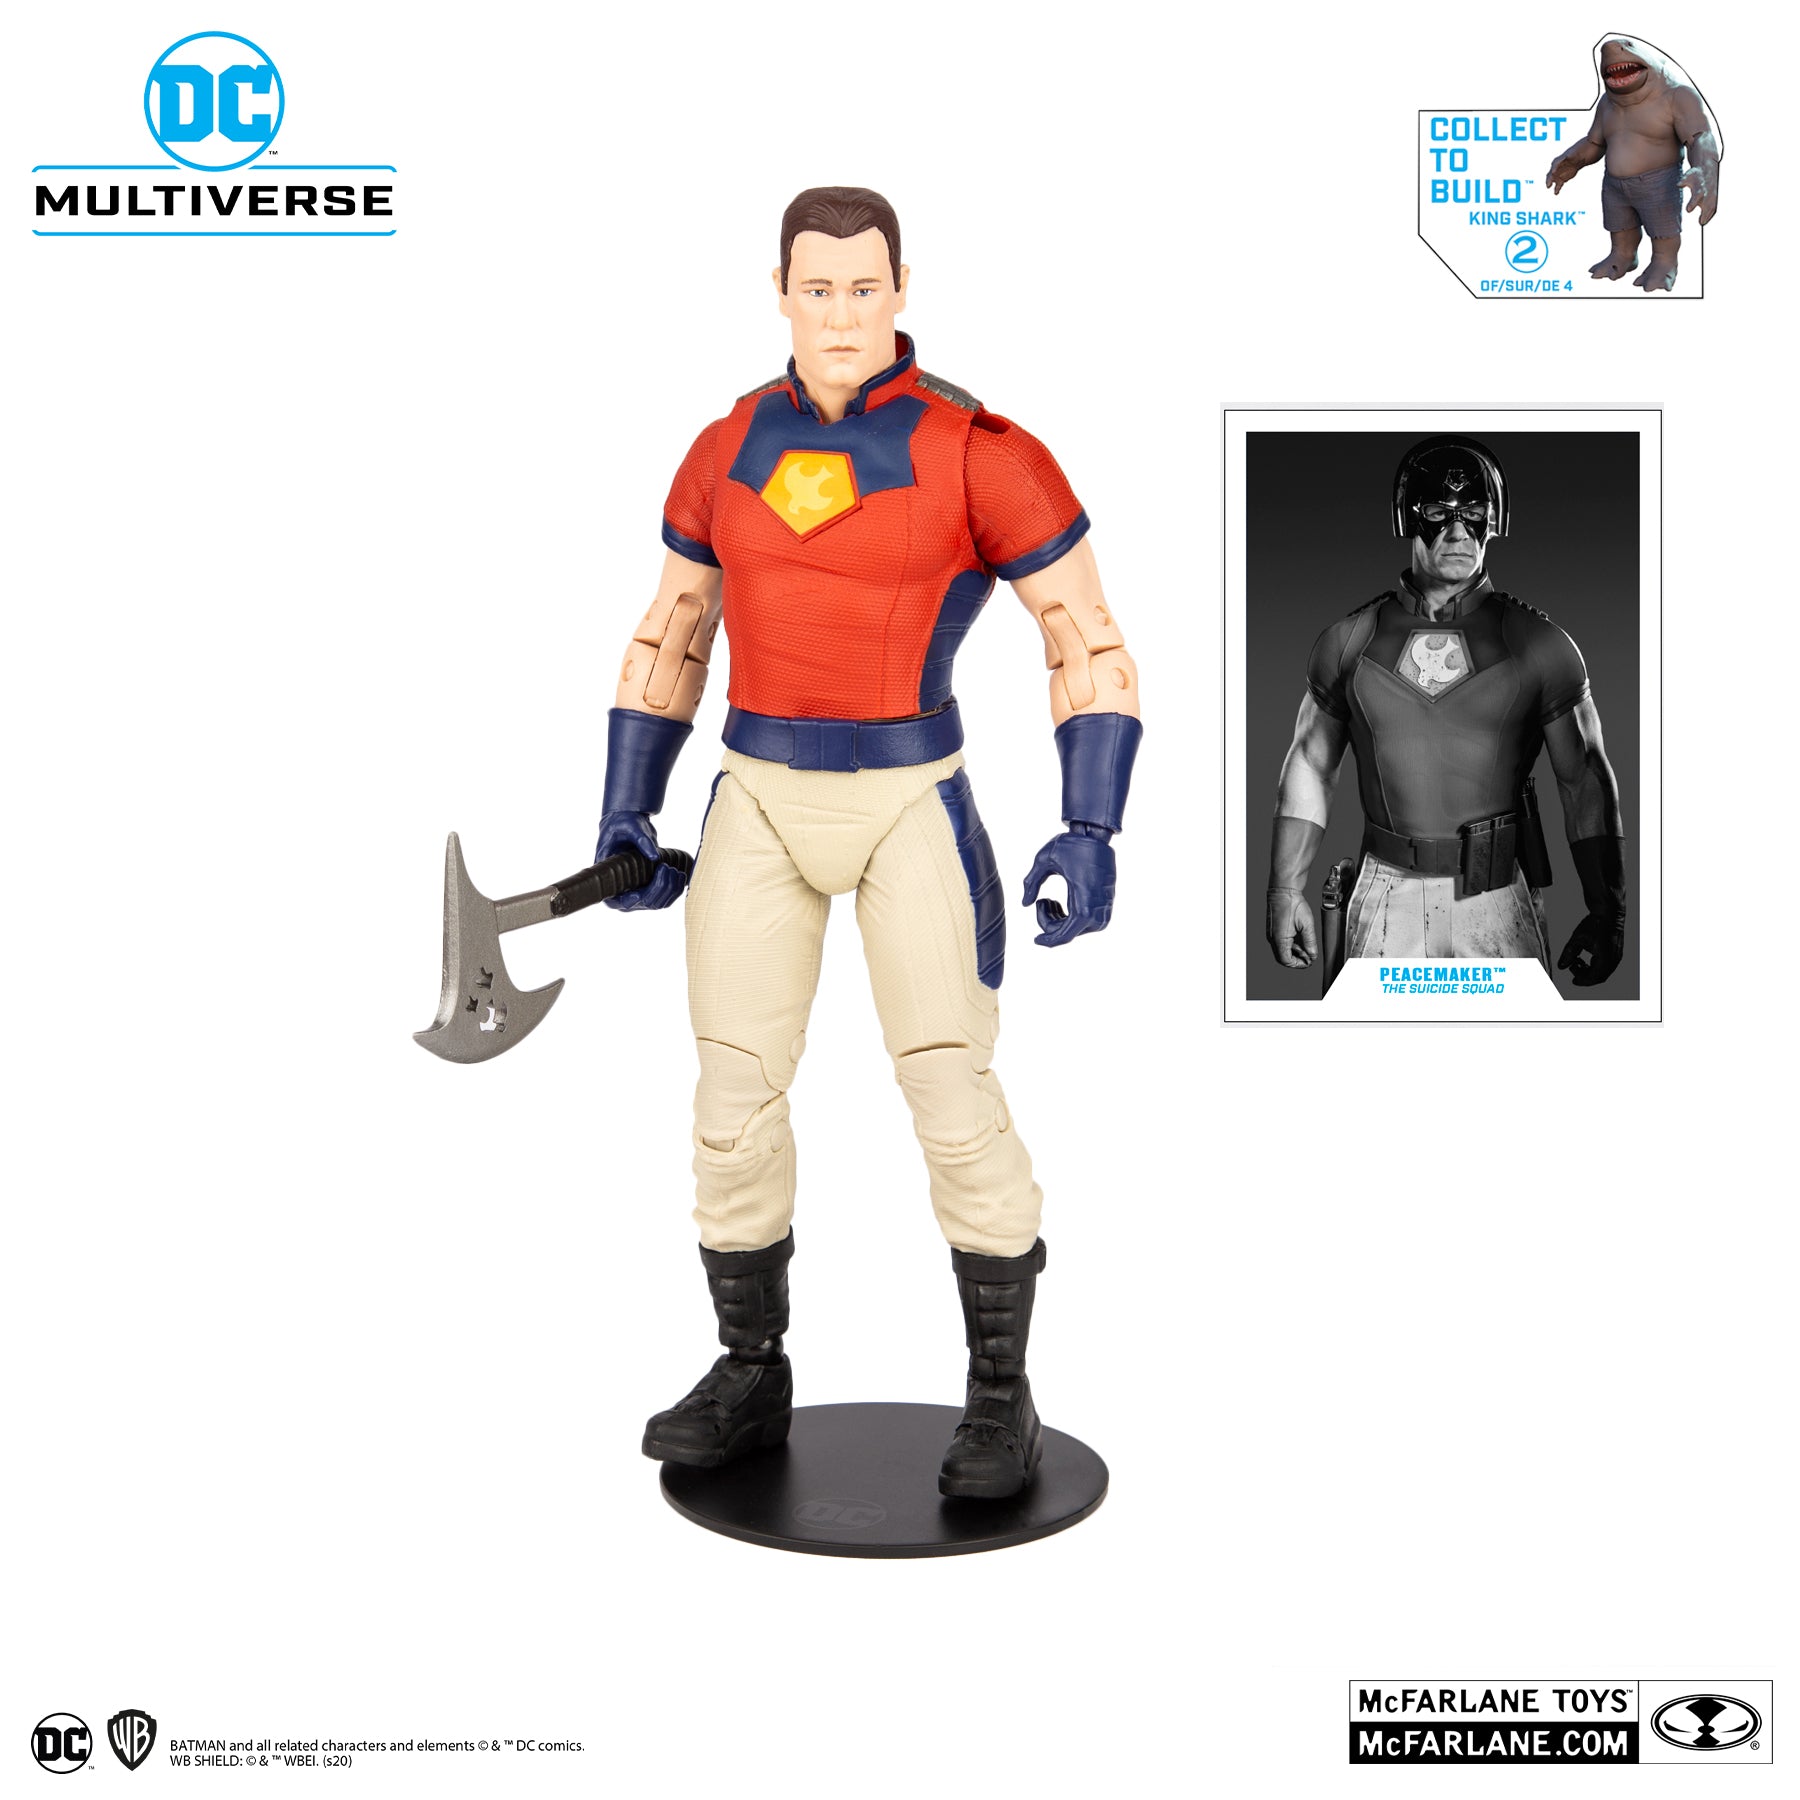 DC Multiverse Suicide Squad Peacemaker Unmasked BAF King Shark - McFarlane Toys-3